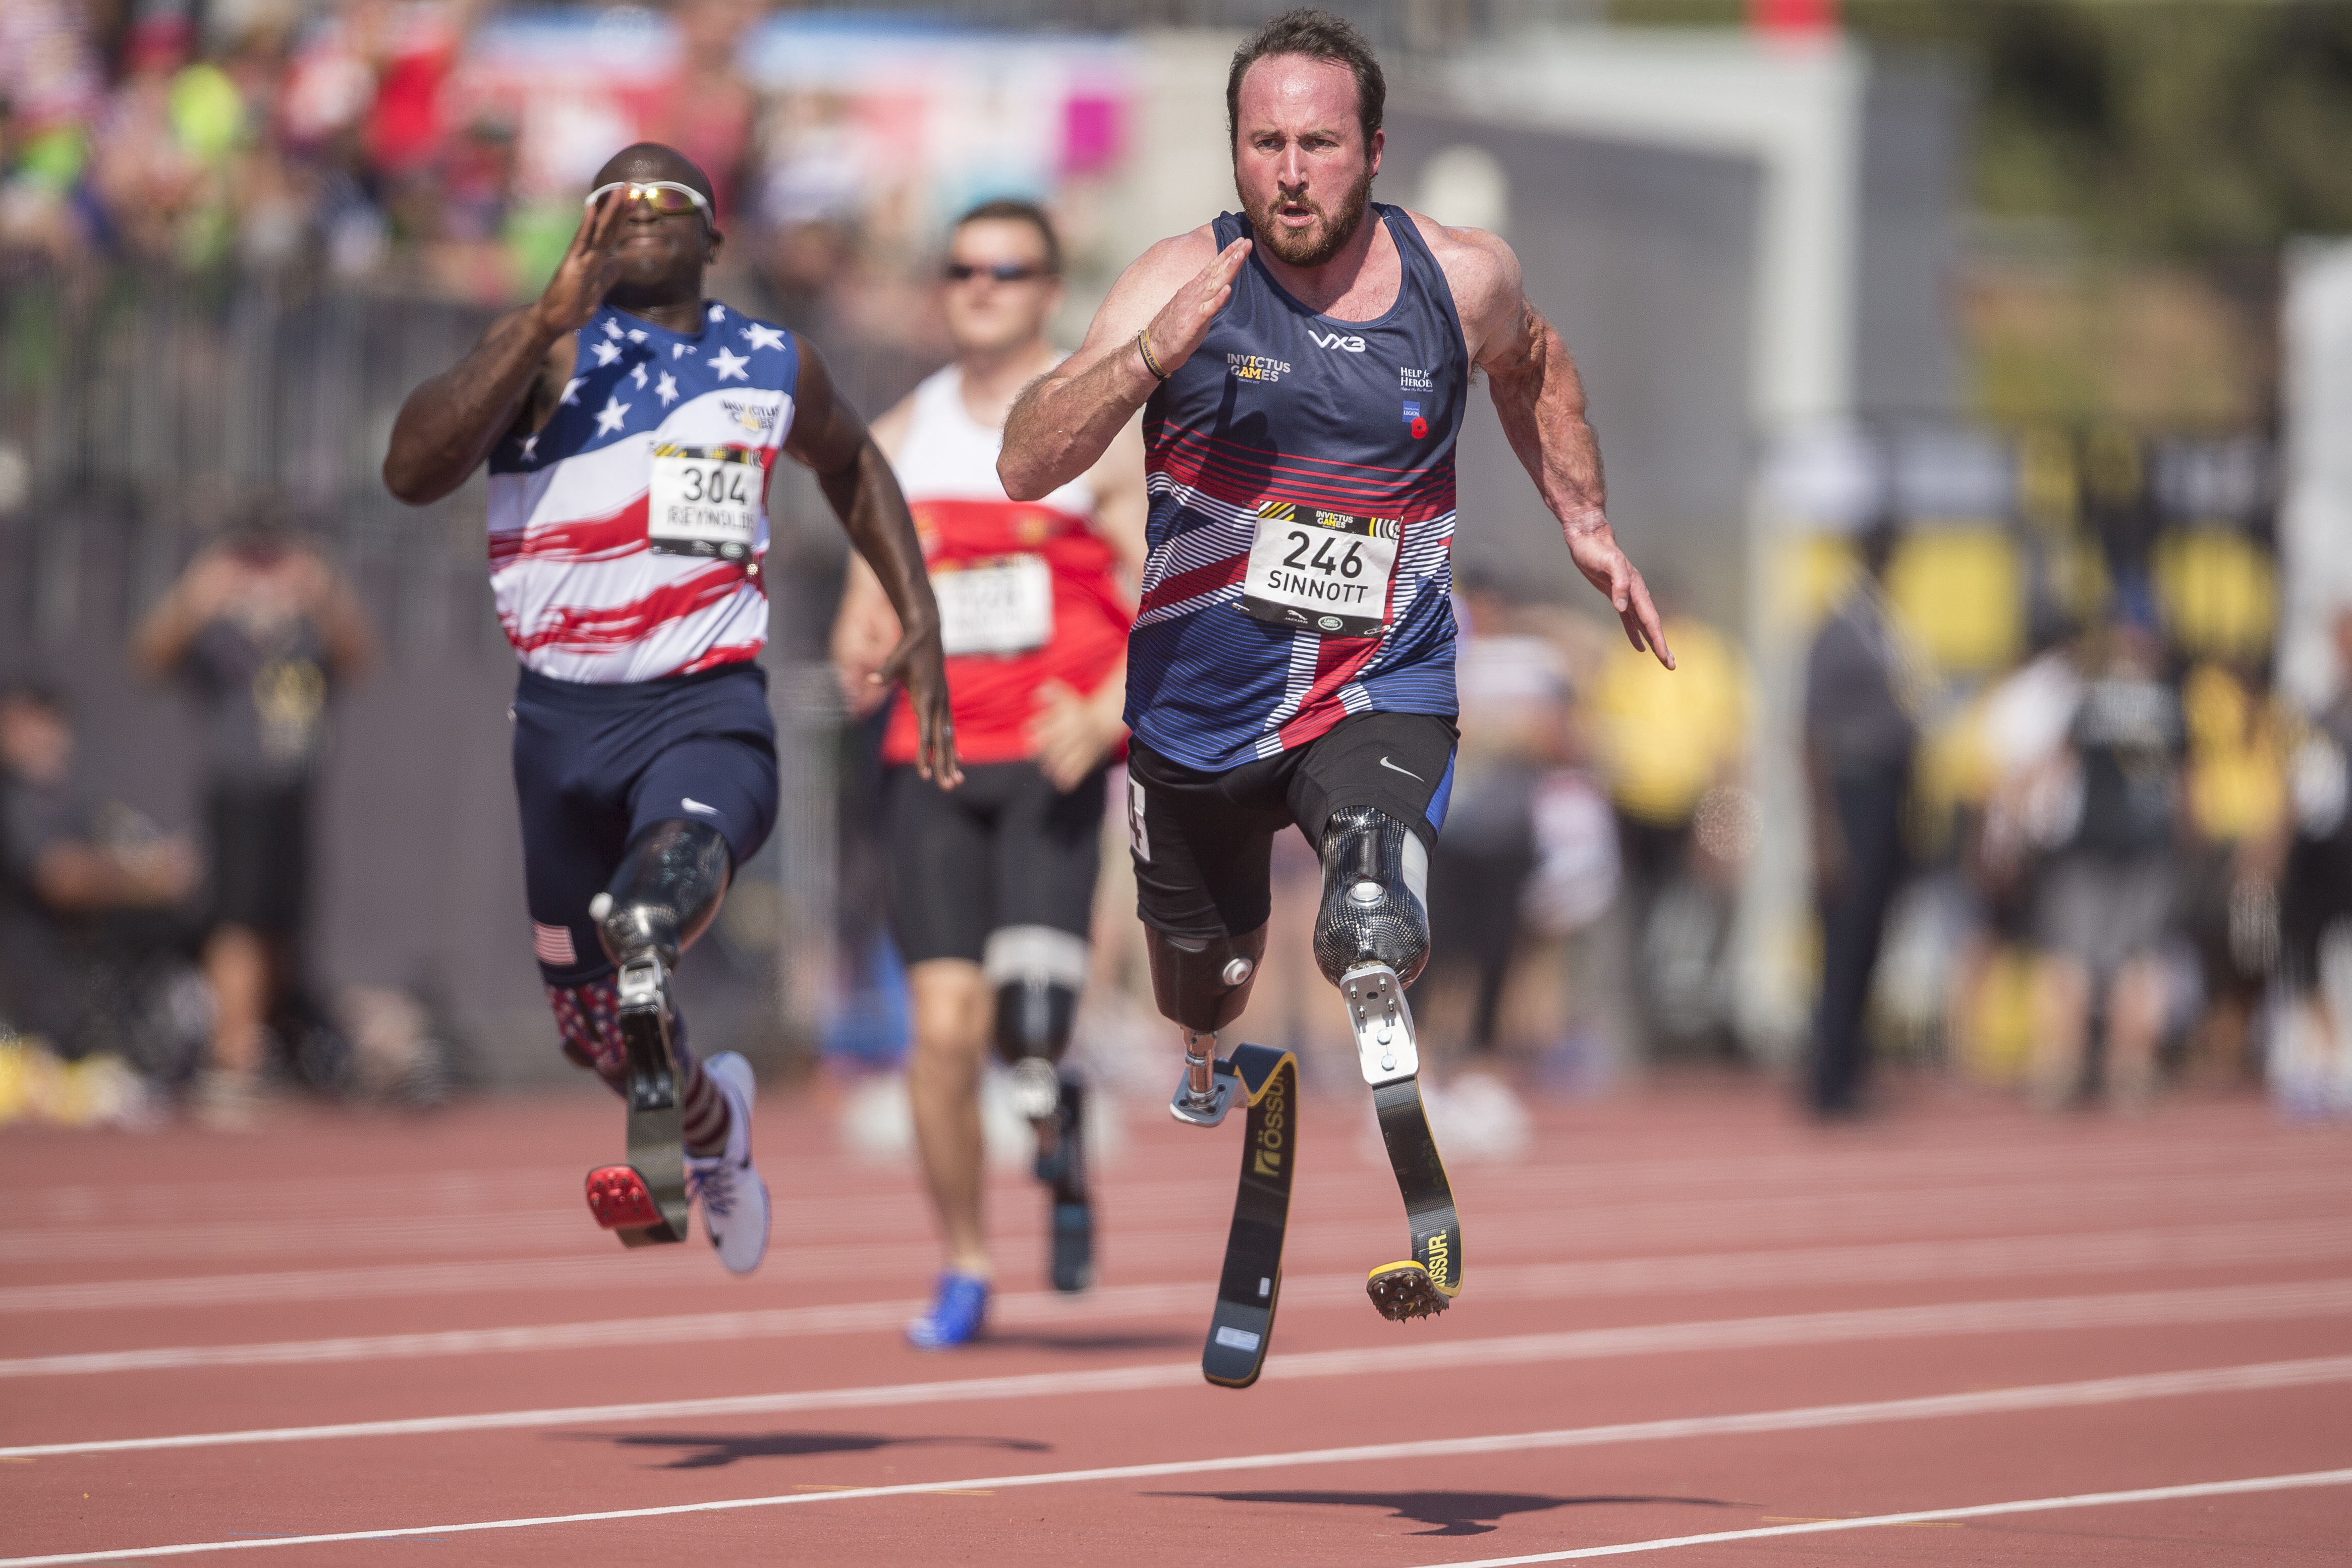 Paralimpiai sprinterek egy torontói versenyen